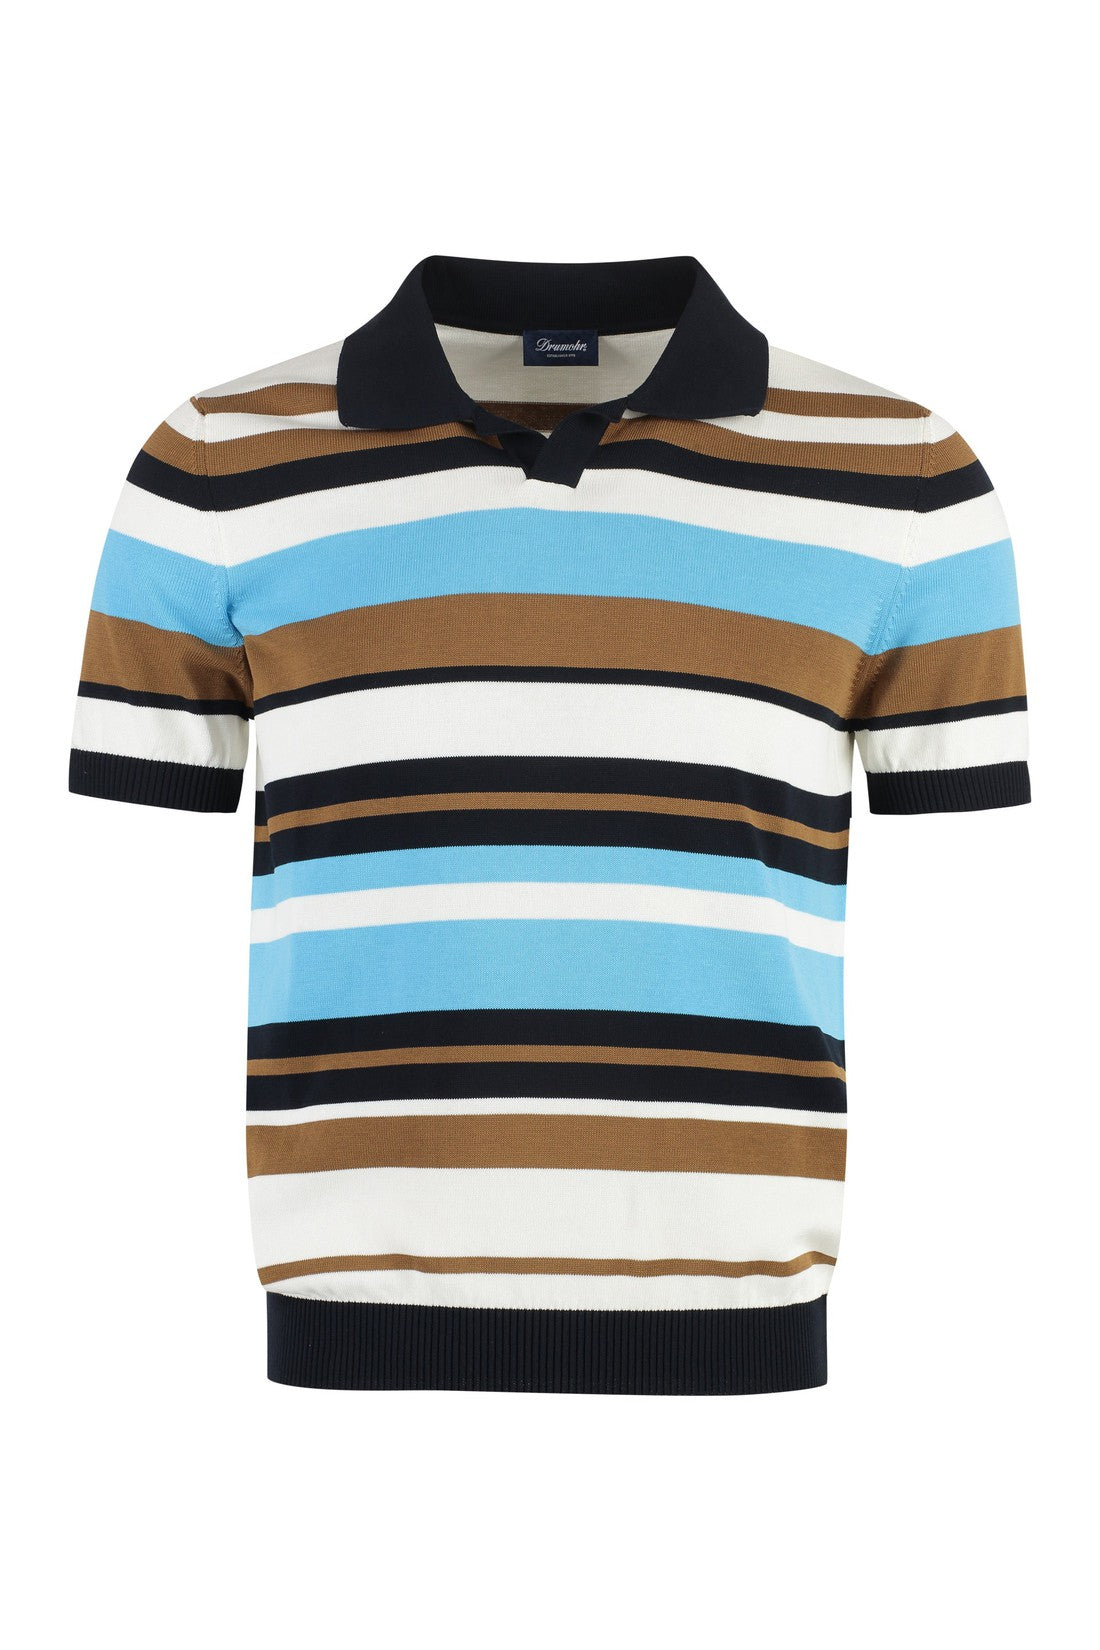 Piralo-OUTLET-SALE-Short sleeve cotton polo shirt-ARCHIVIST